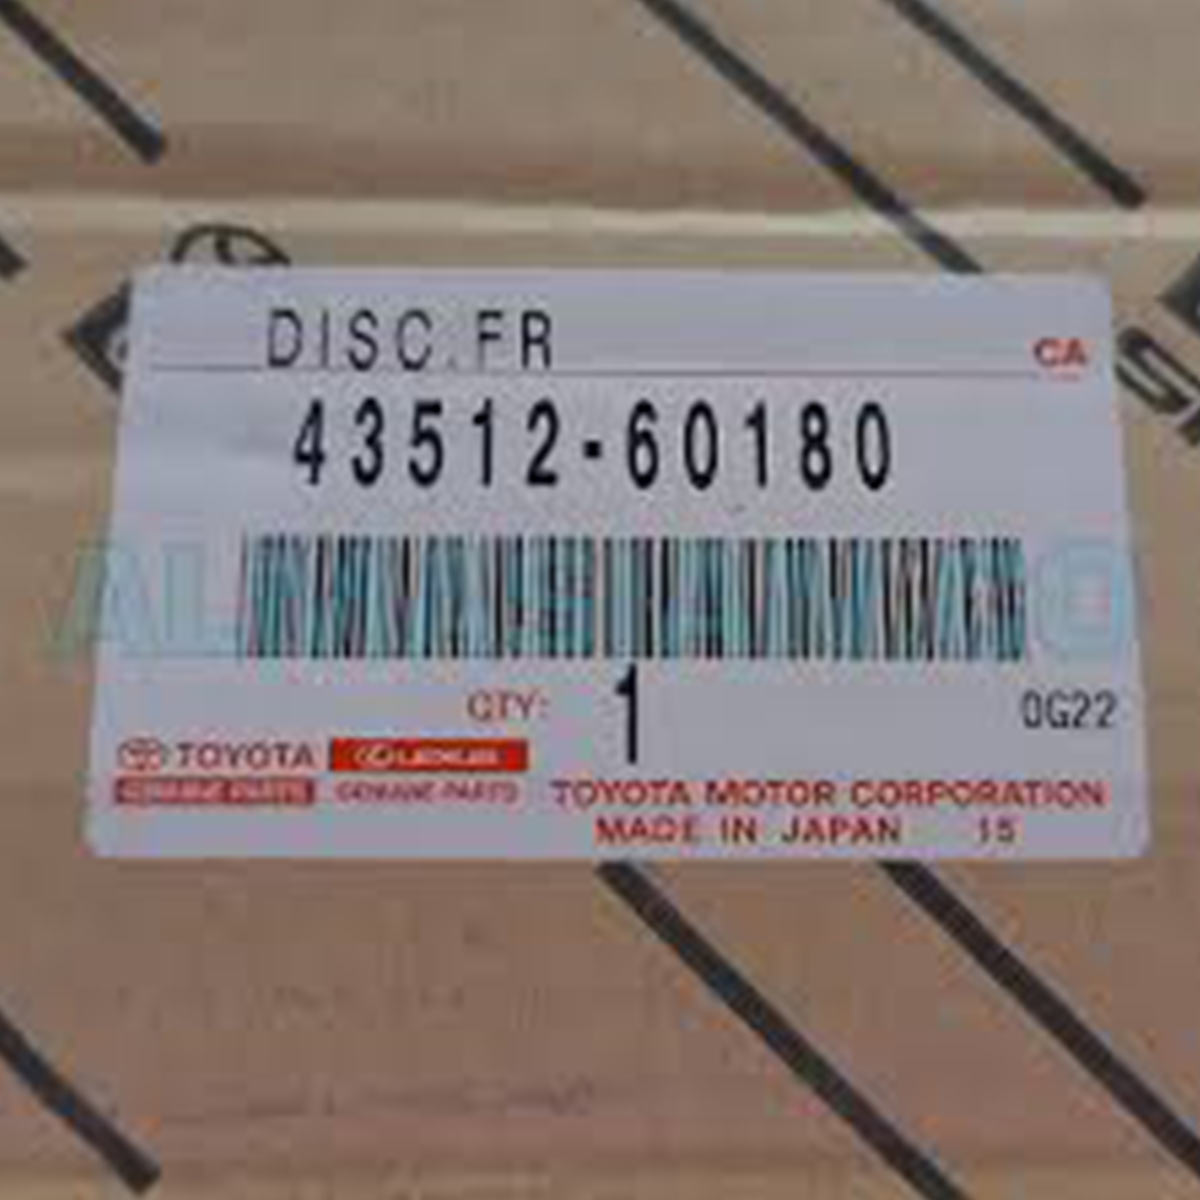 دیسک چرخ جلو اصلی مدل 60180-43512 تویوتا لندکروزر (2008 تا 2013)